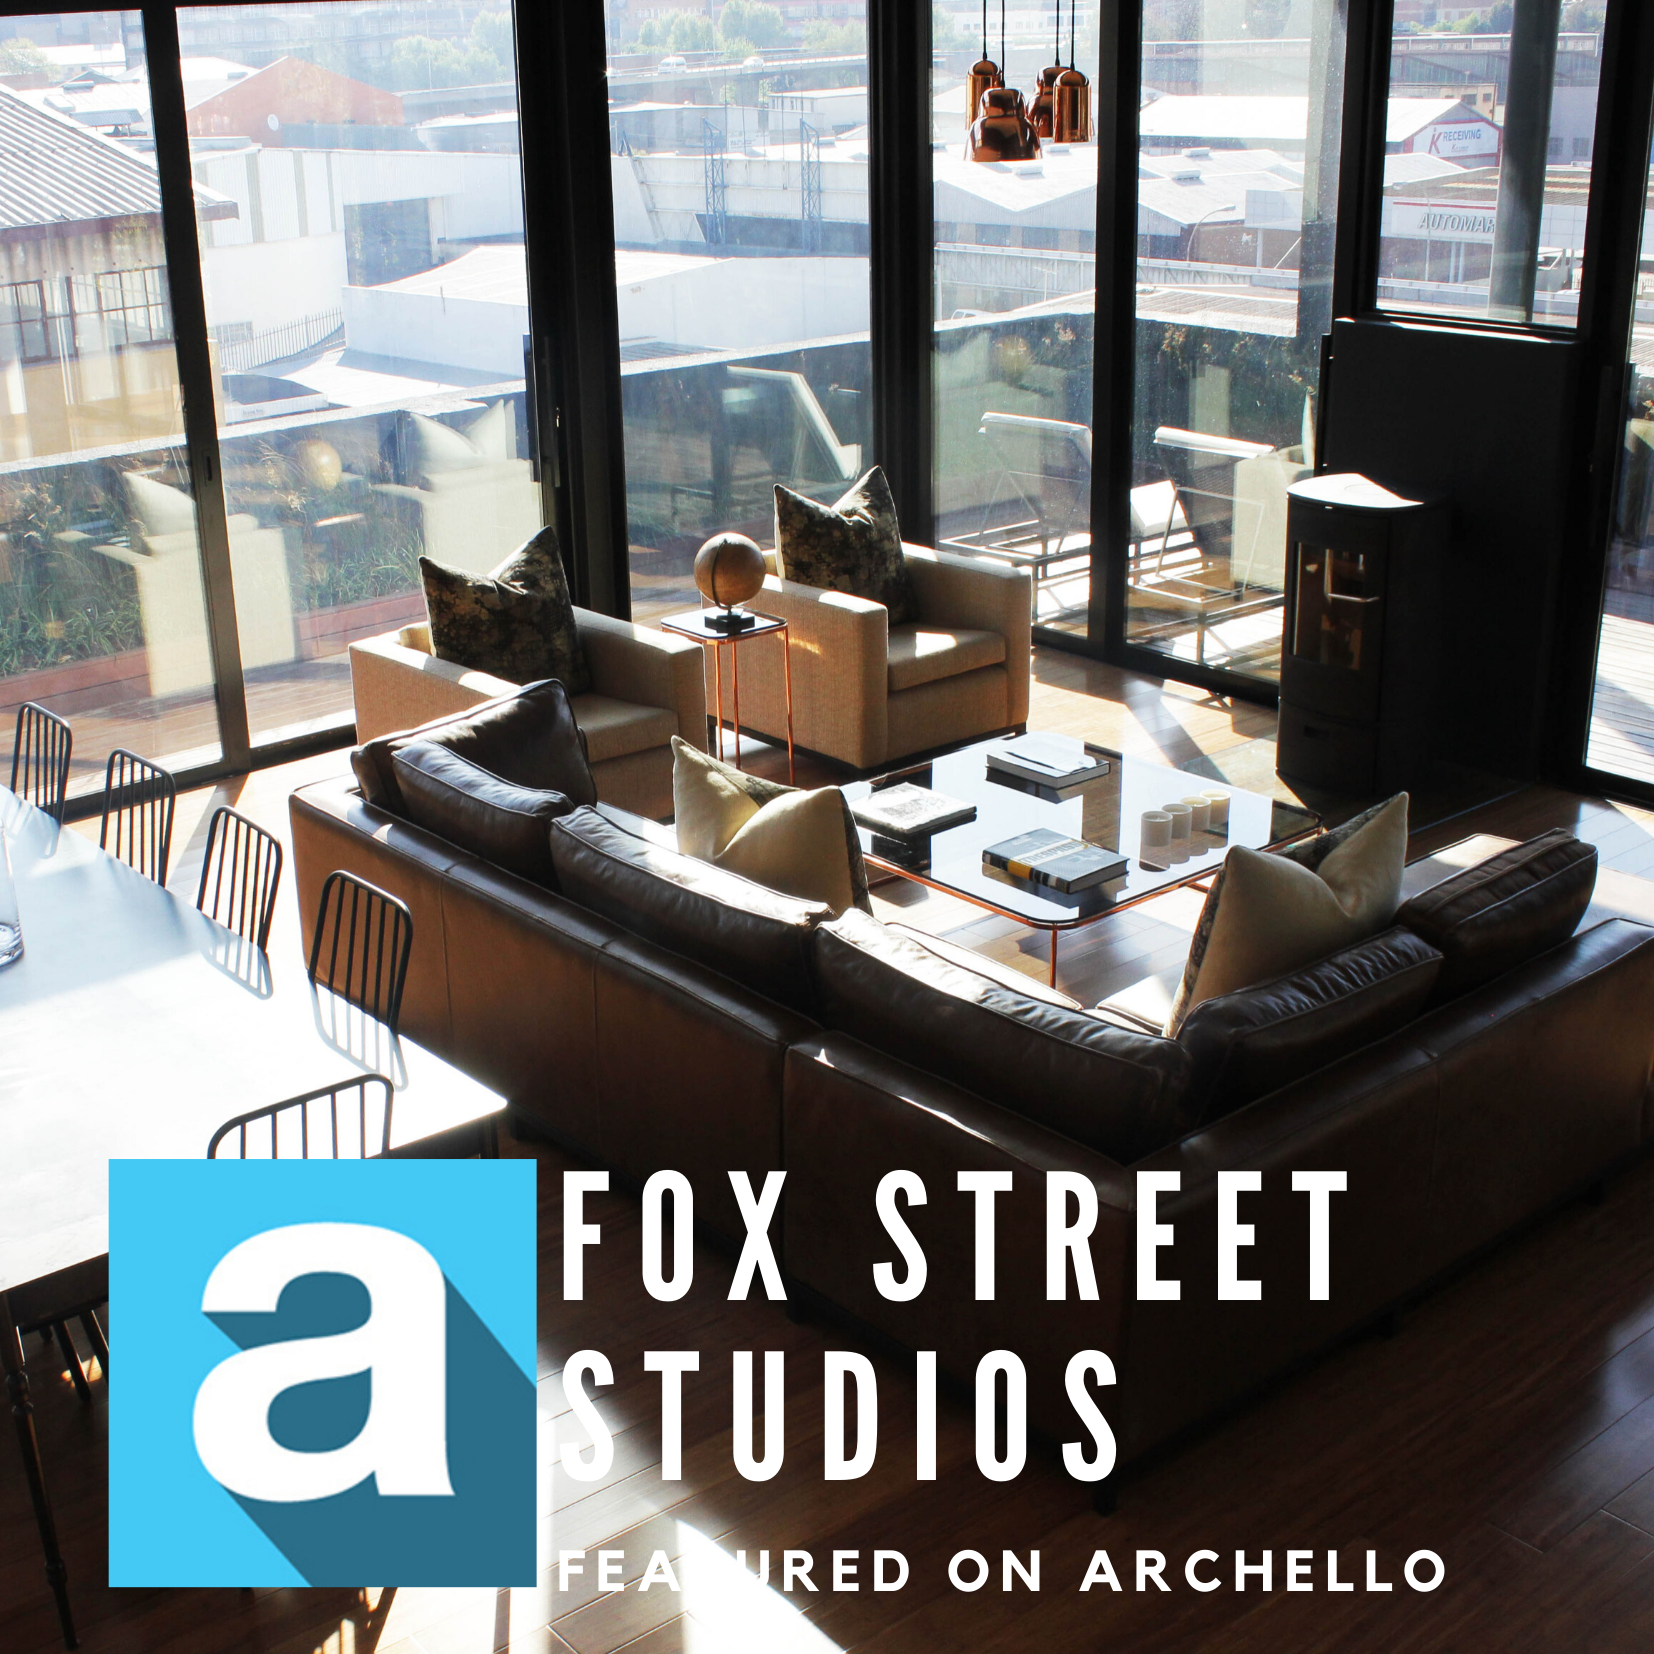 Fox Street Studios, Maboneng featured on Archello 